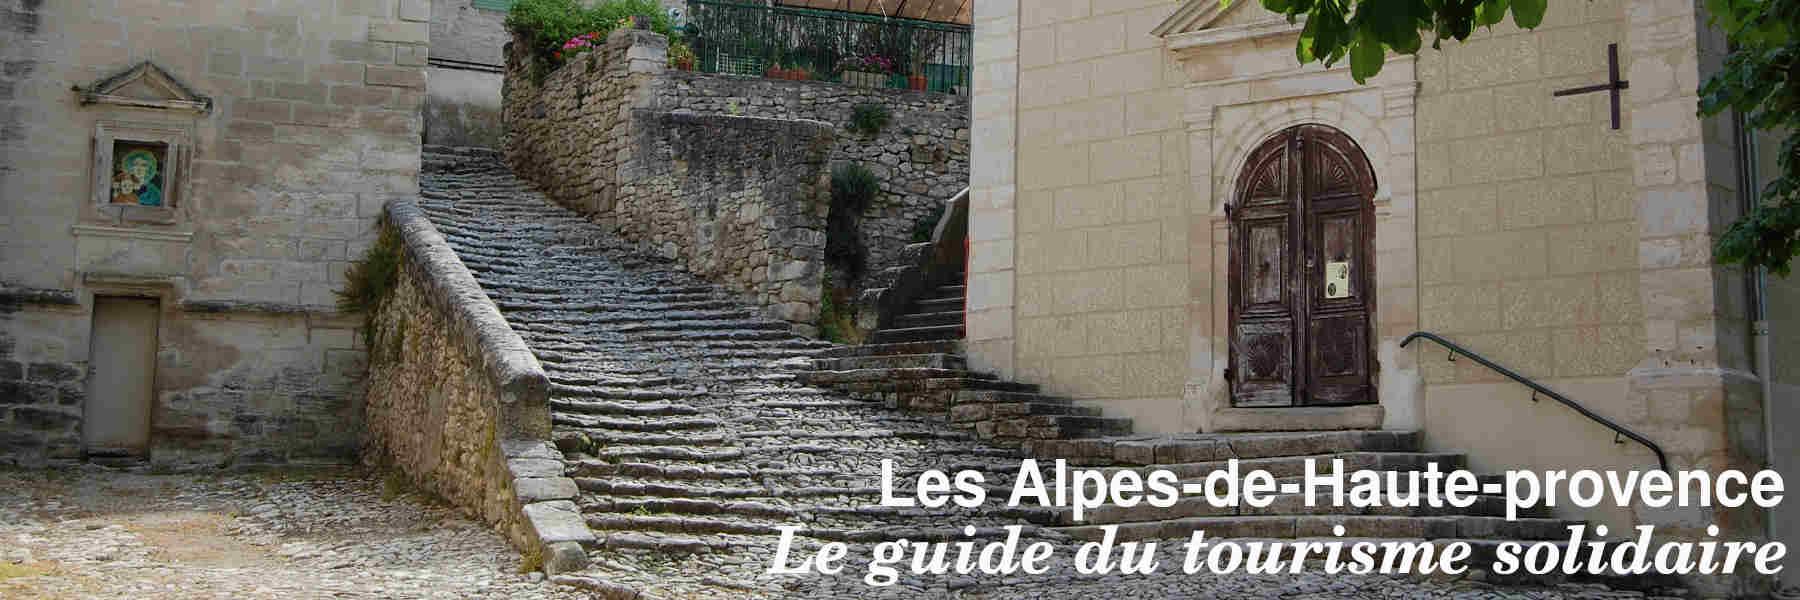 Le guide du tourisme solidaire des Alpes-de-Haute-Provence